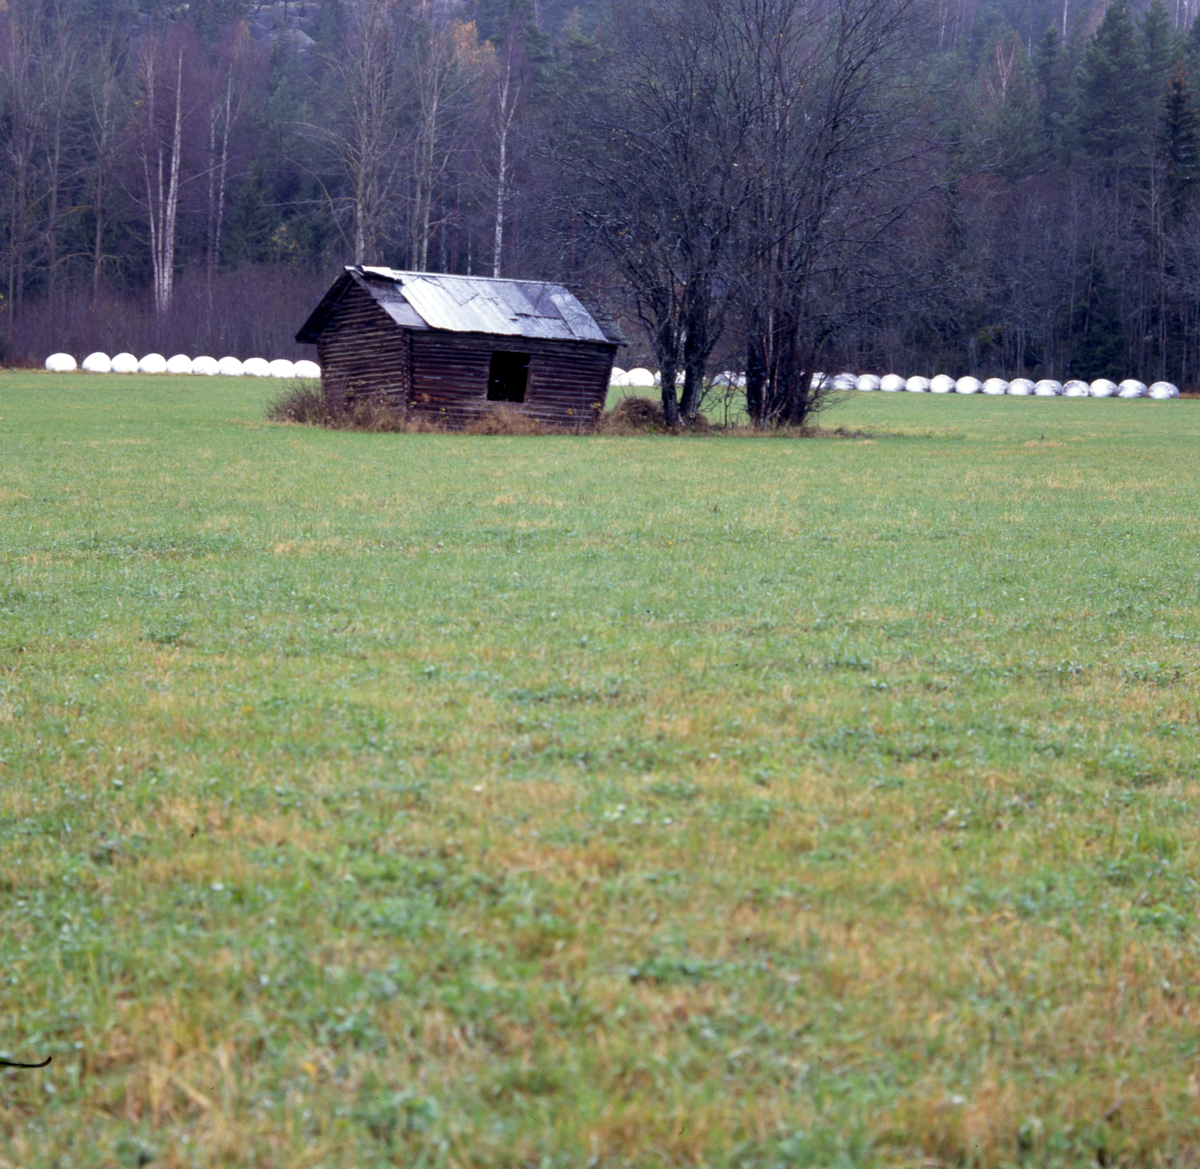 En stuga och ett träd på en gräsåker. I bakgrunden ligger ett stort antal ensilagebalar på rad.